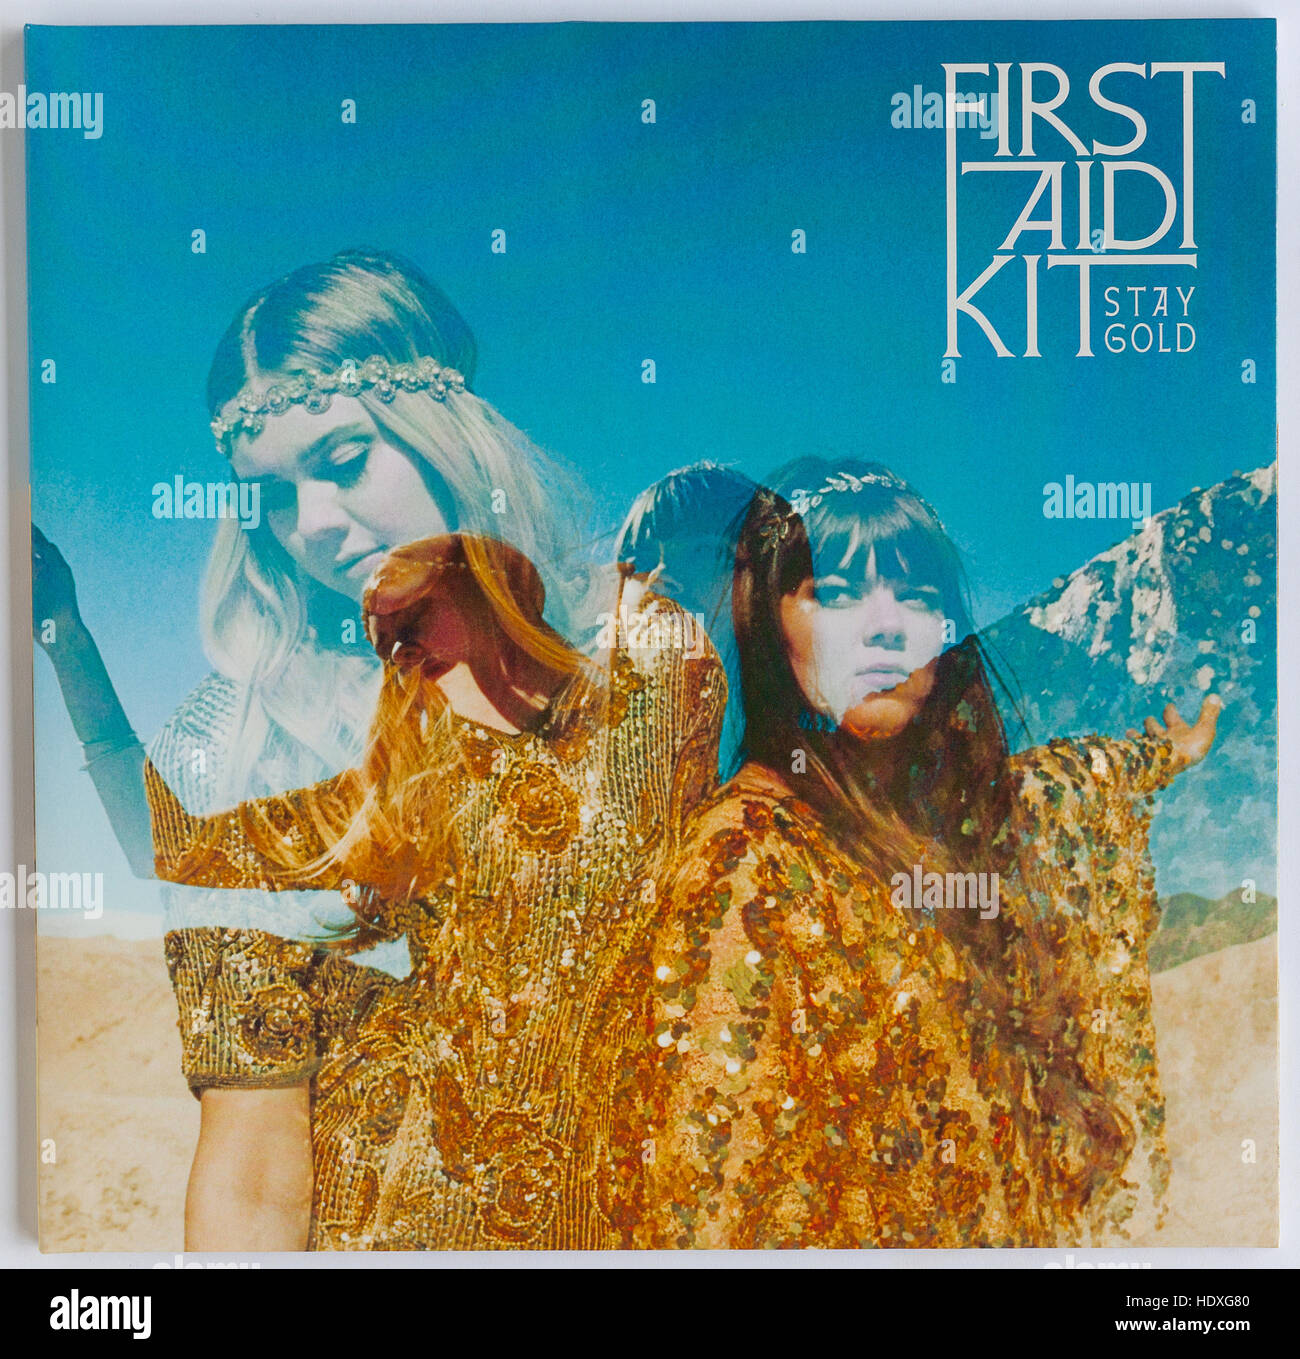 La copertina di 'Stay Gold', album del 2014 di First Aid Kit - solo per uso editoriale Foto Stock